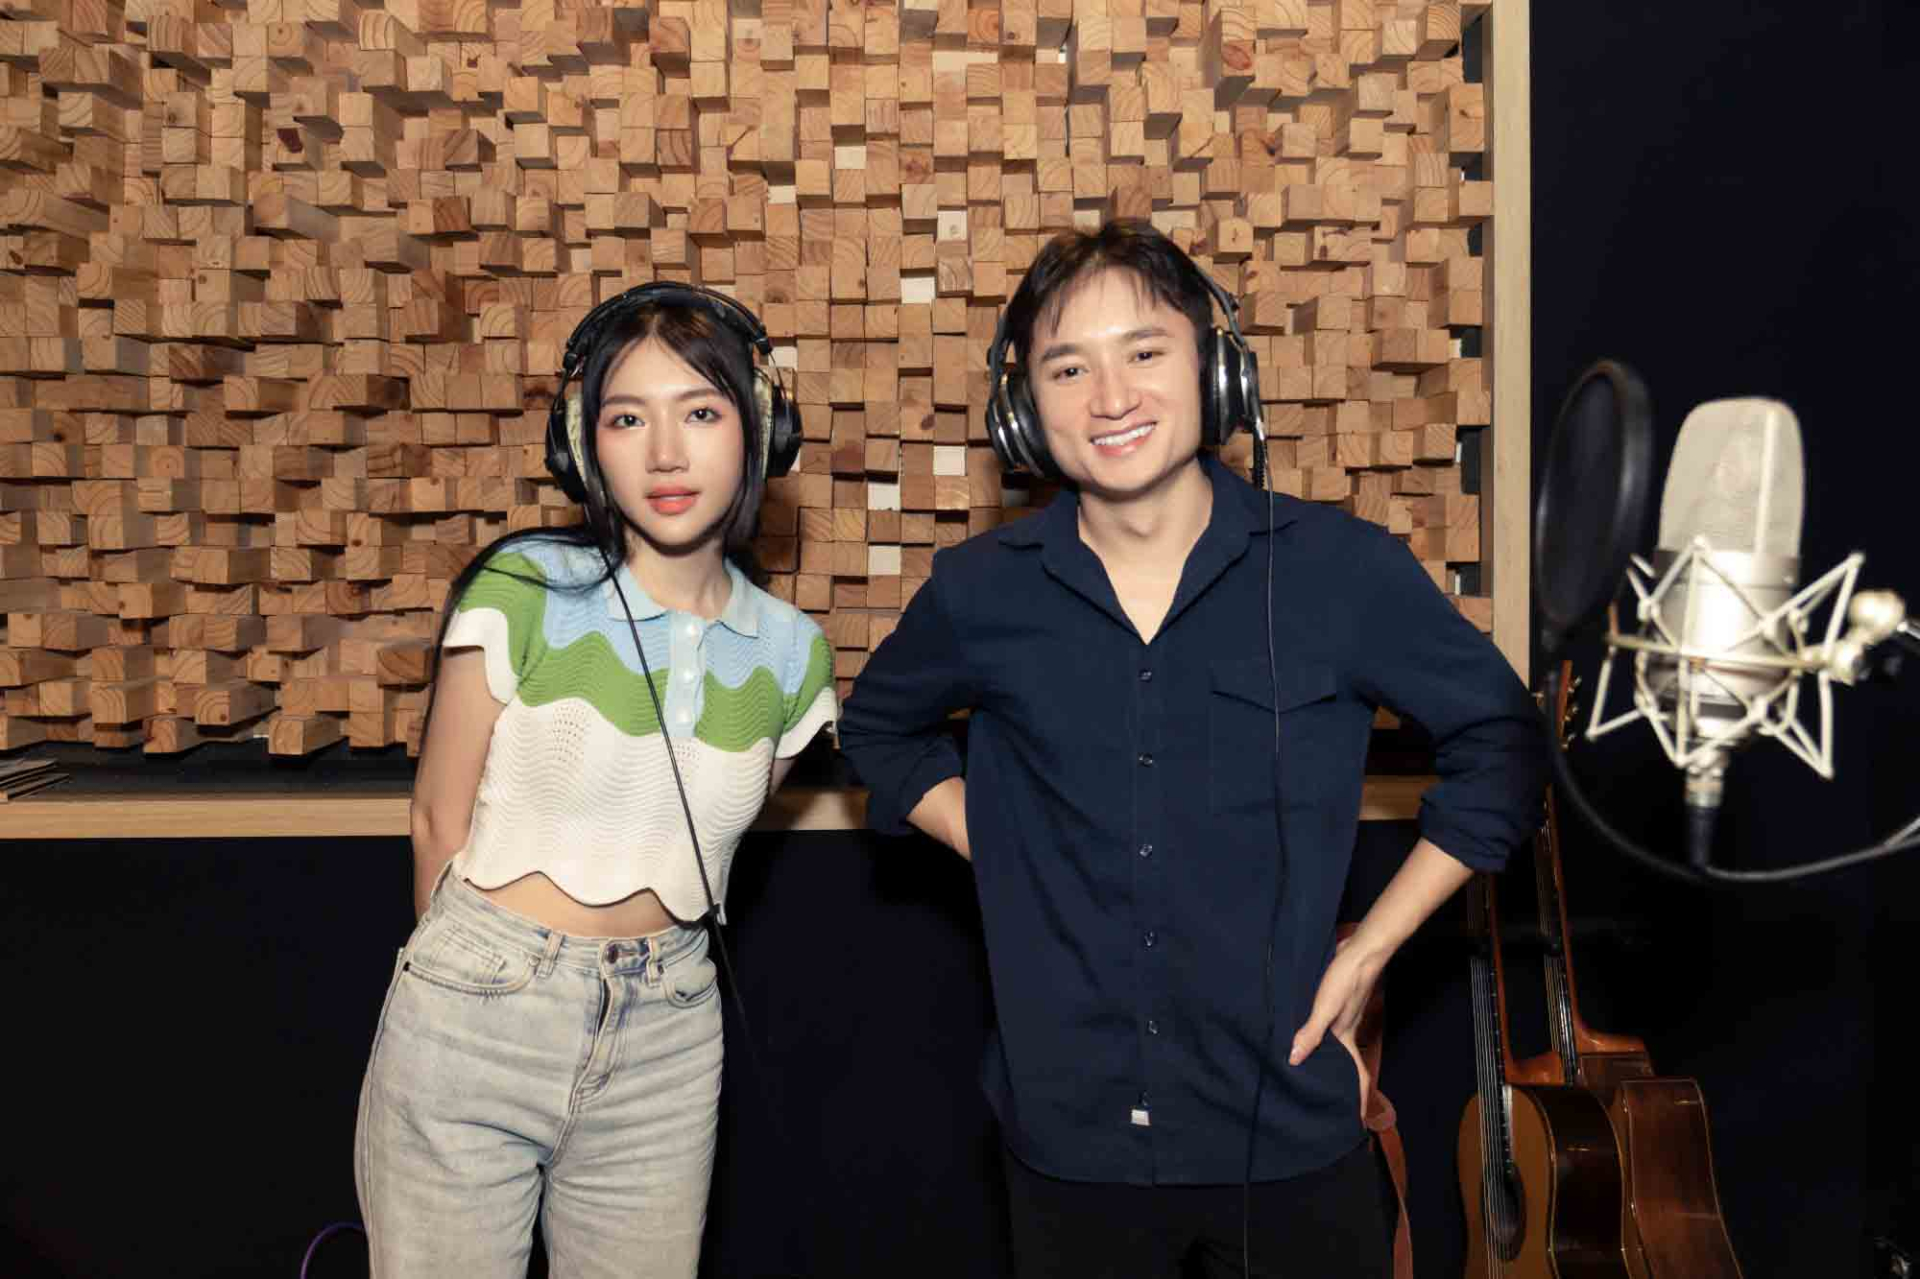 Chia sẻ về màn hợp tác cùng Orange, Phan Mạnh Quỳnh cho biết: “Tôi đã nghe nhiều sản phẩm của Orange và thấy bạn hát rất hay, có cách xử lý hiện đại.